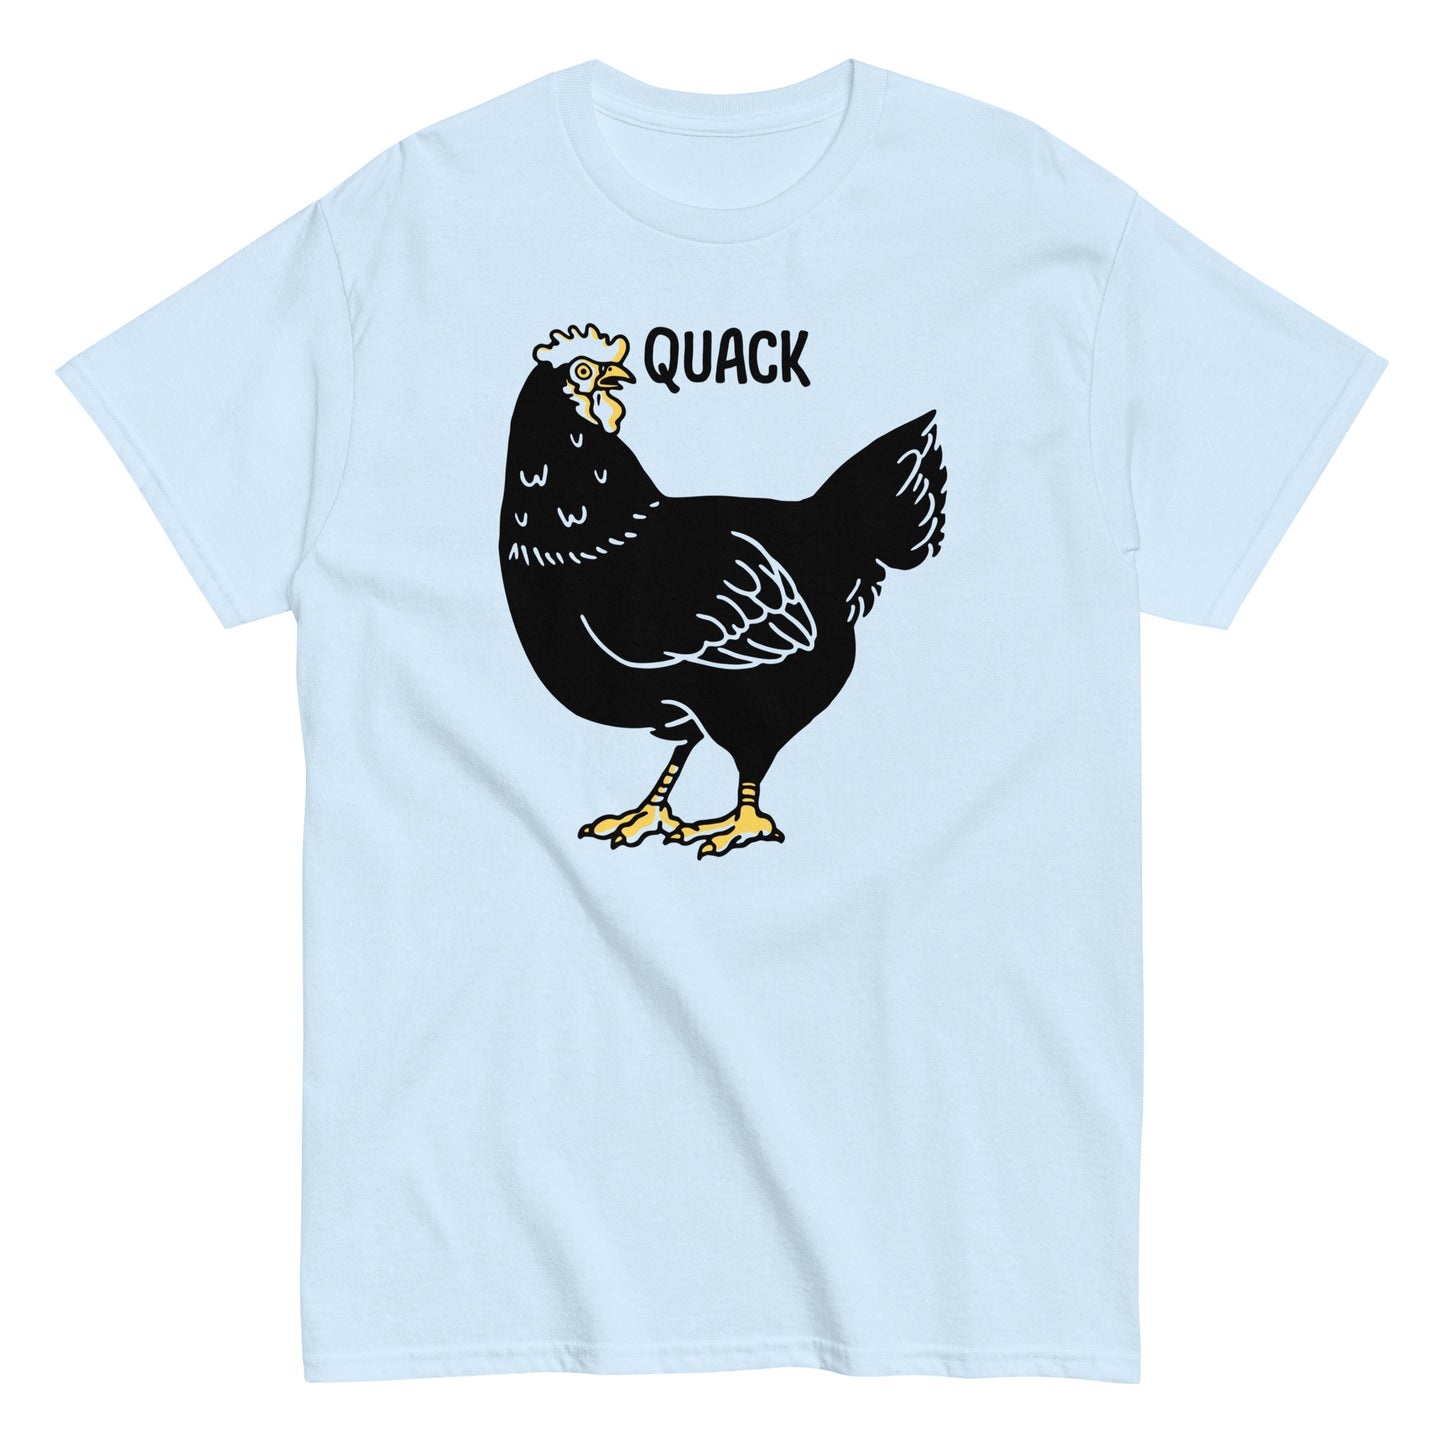 Quack Bird Men's Classic Tee